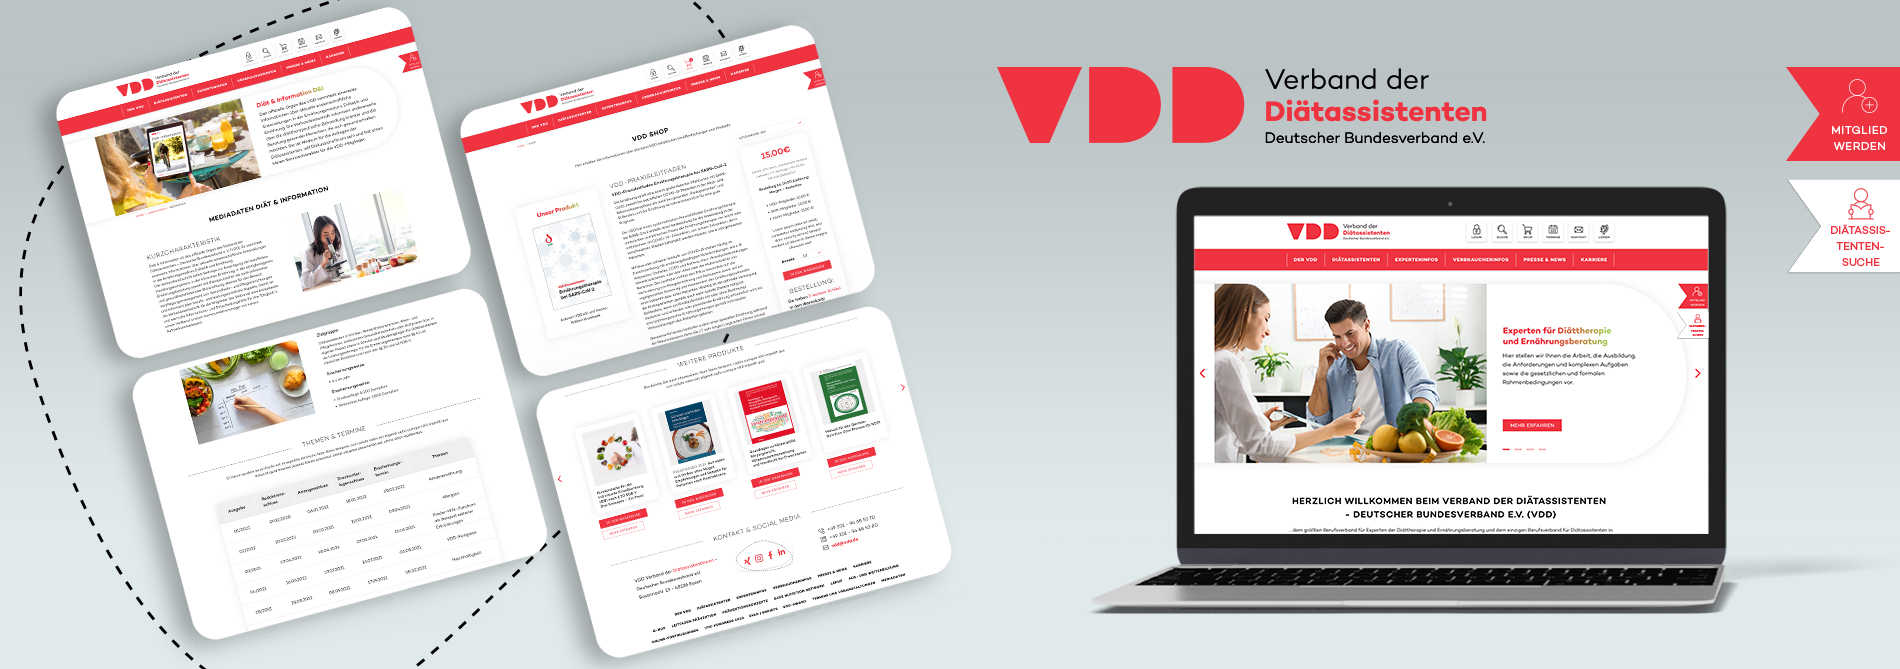 die neue VDD-Website